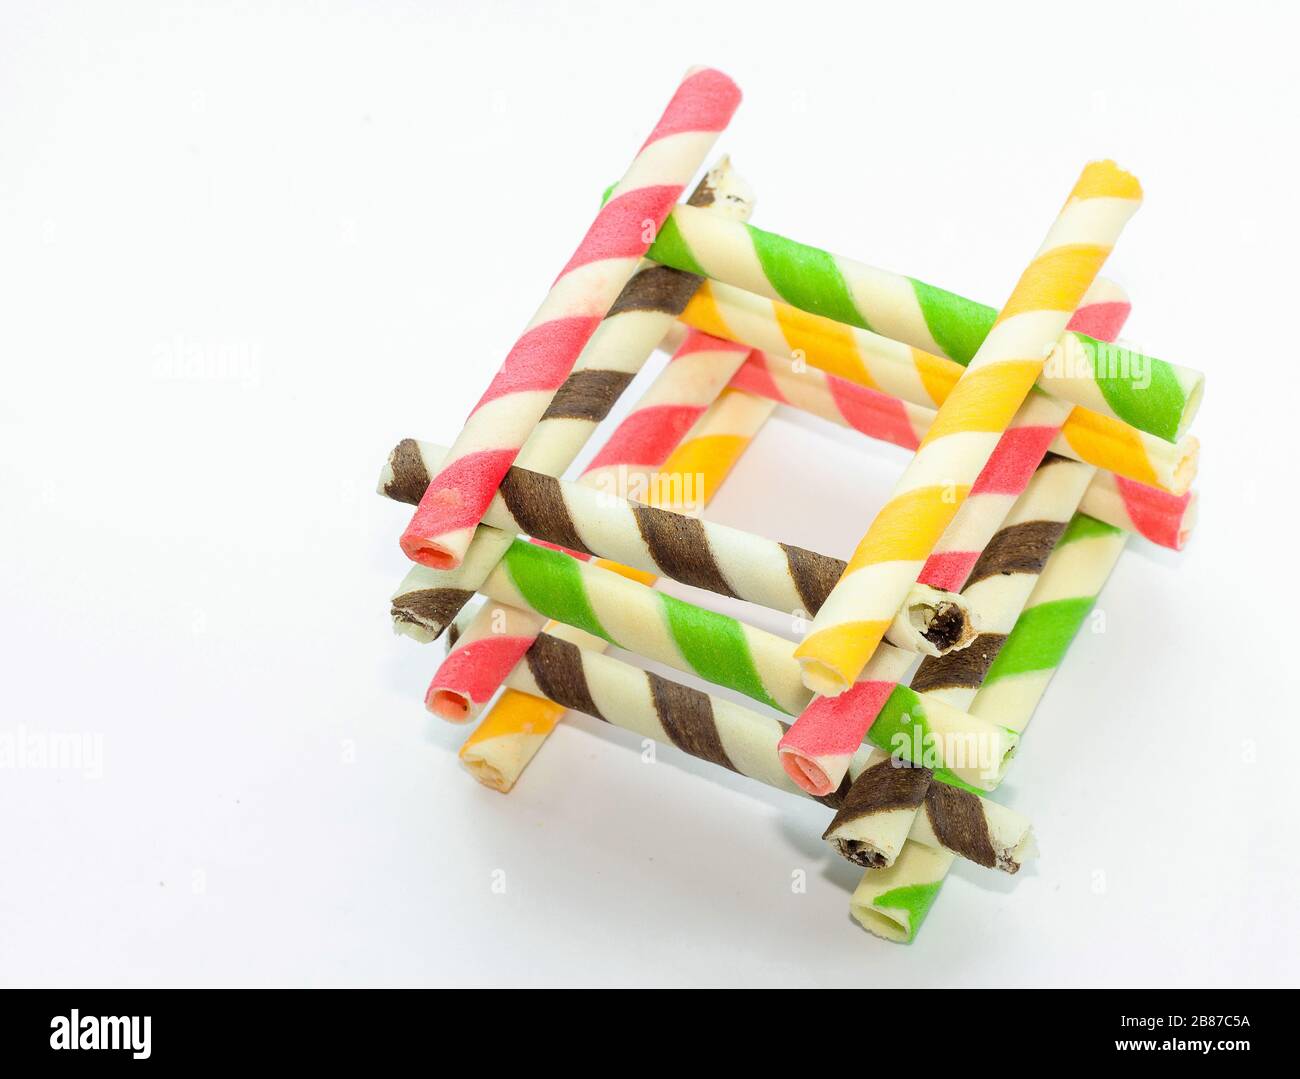 rotolo di snack croccante arcobaleno con sapore misto su sfondo bianco Foto Stock